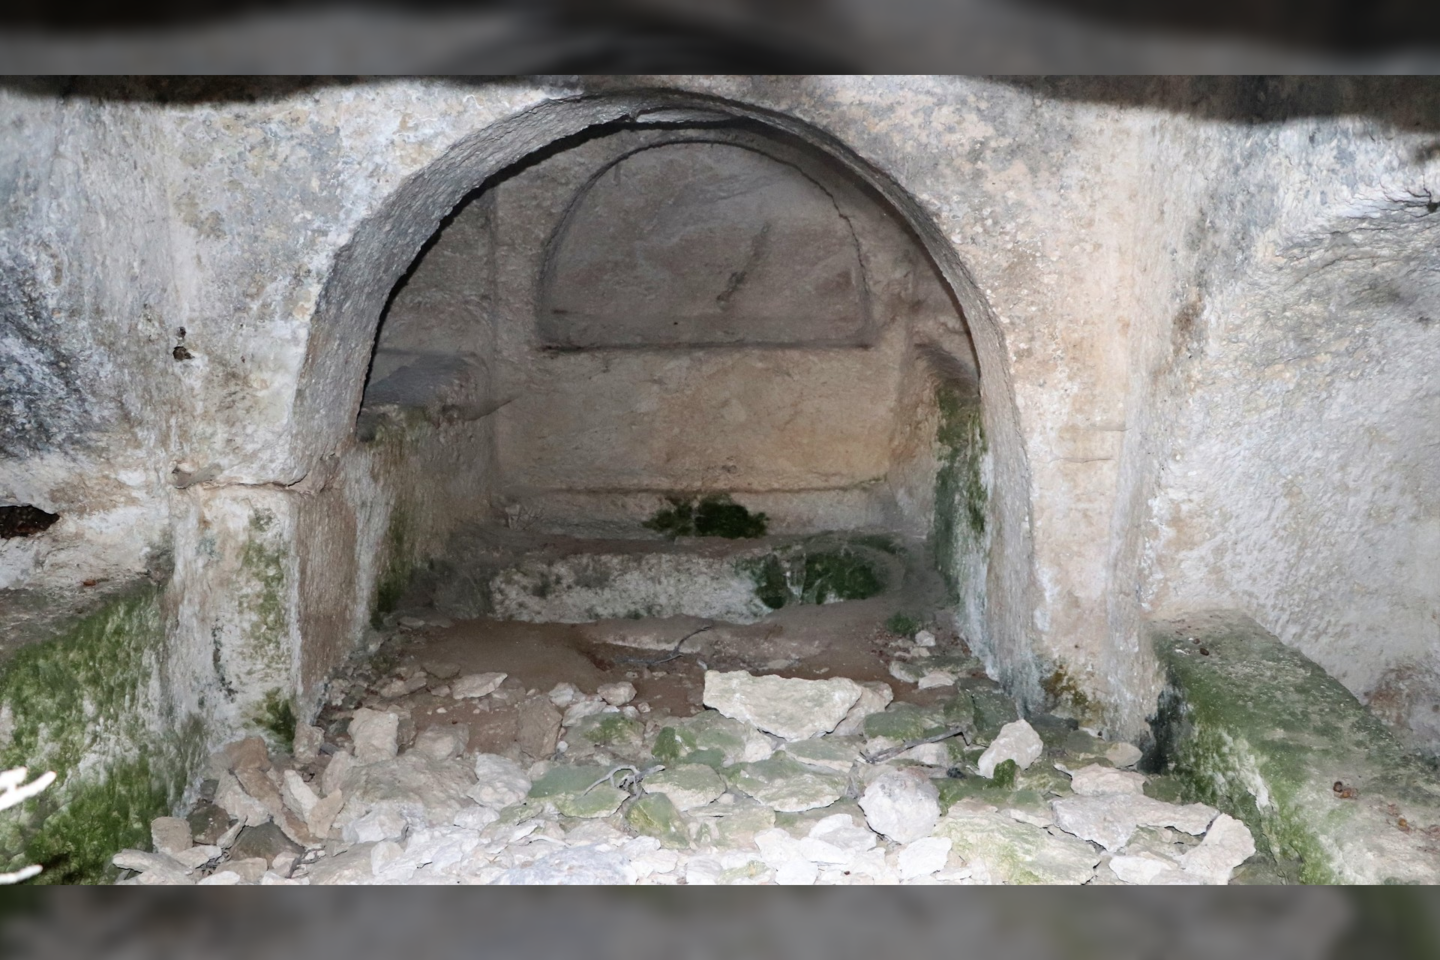  Viena iš uoloje iškaltų kamerinių kapaviečių su grindyse įrengtu sarkofagu.<br> Blaundo kasinėjimų projekto nuotr.